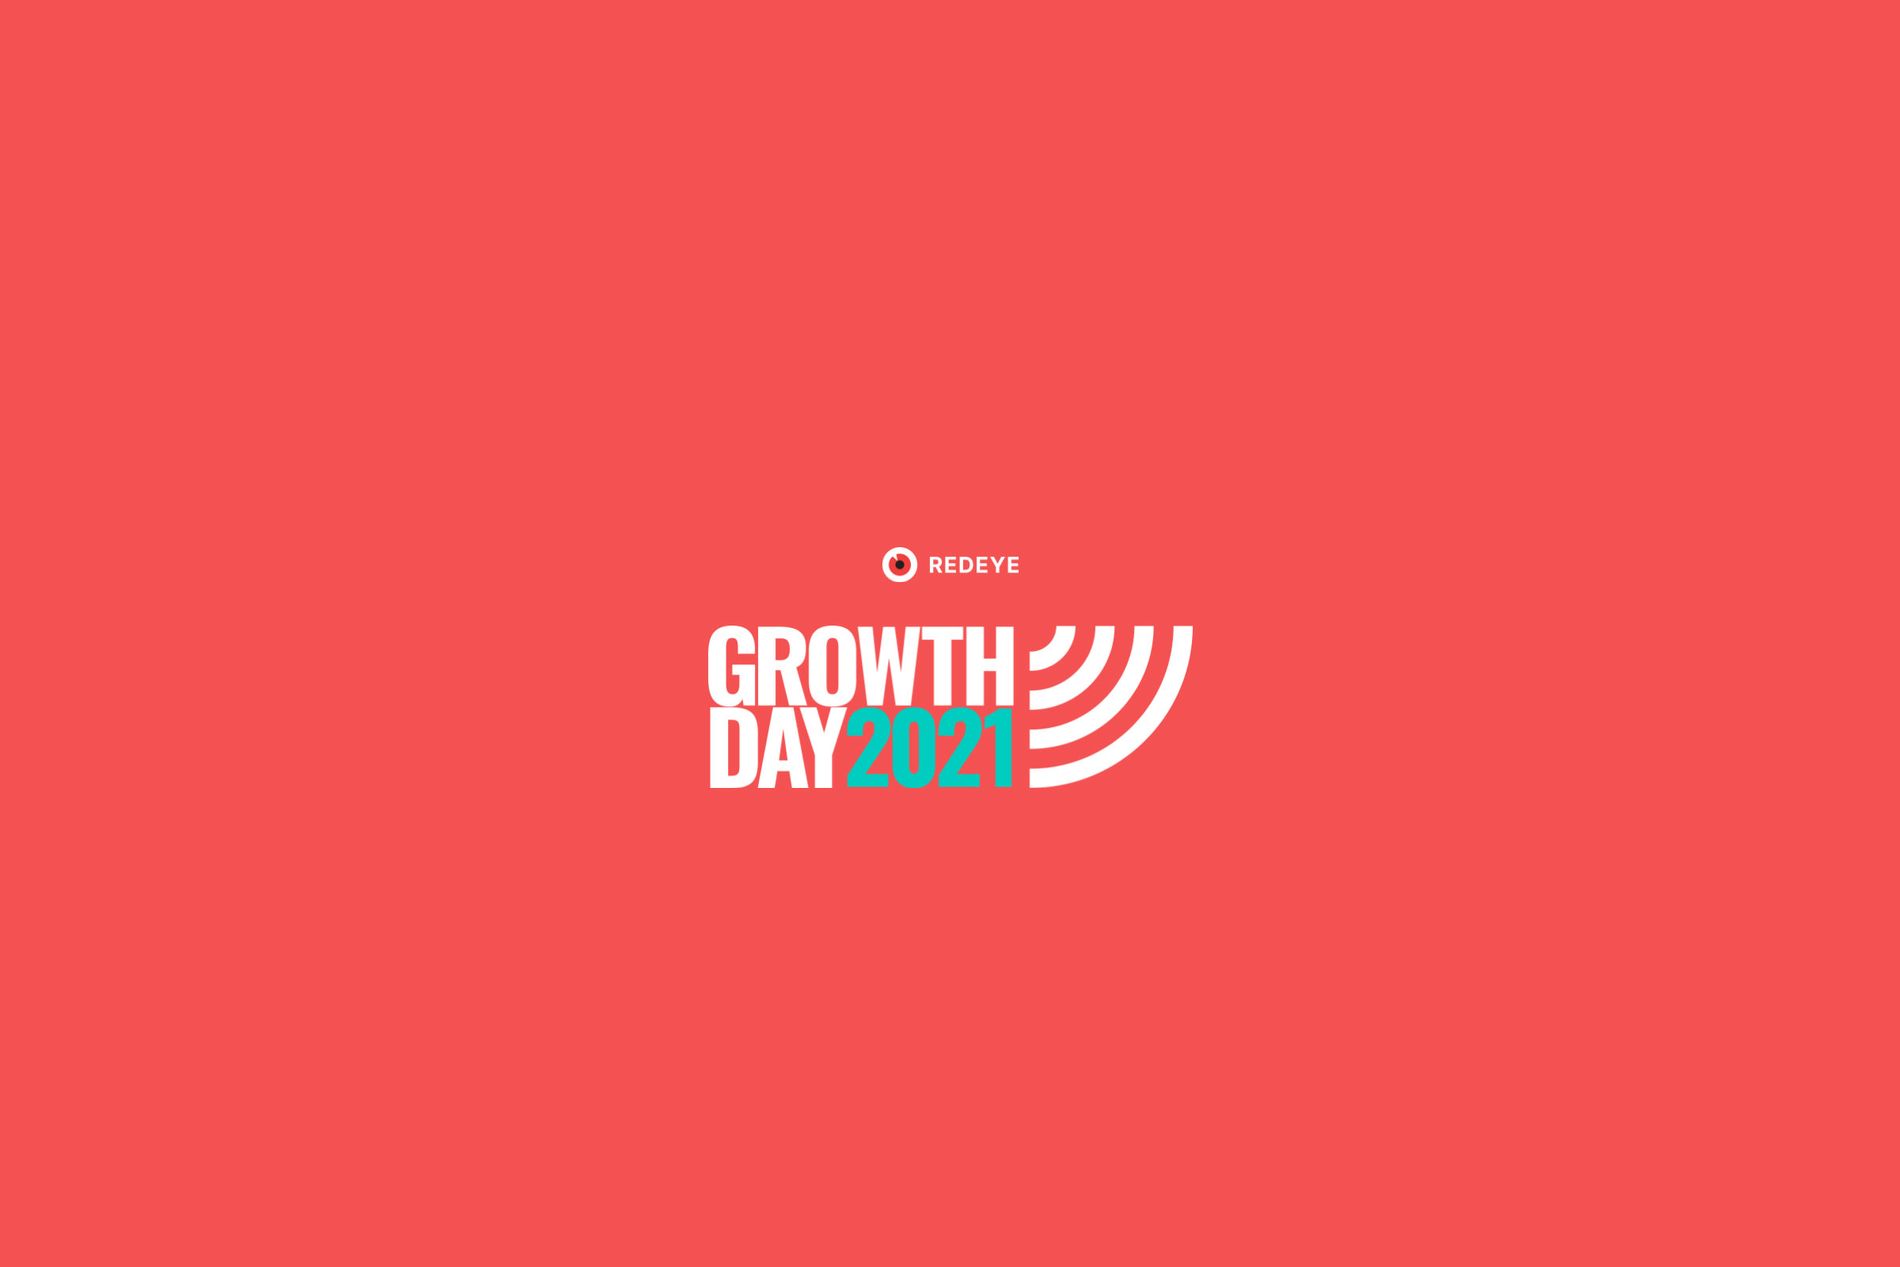 Redeye Growth Day 2021 - small logo